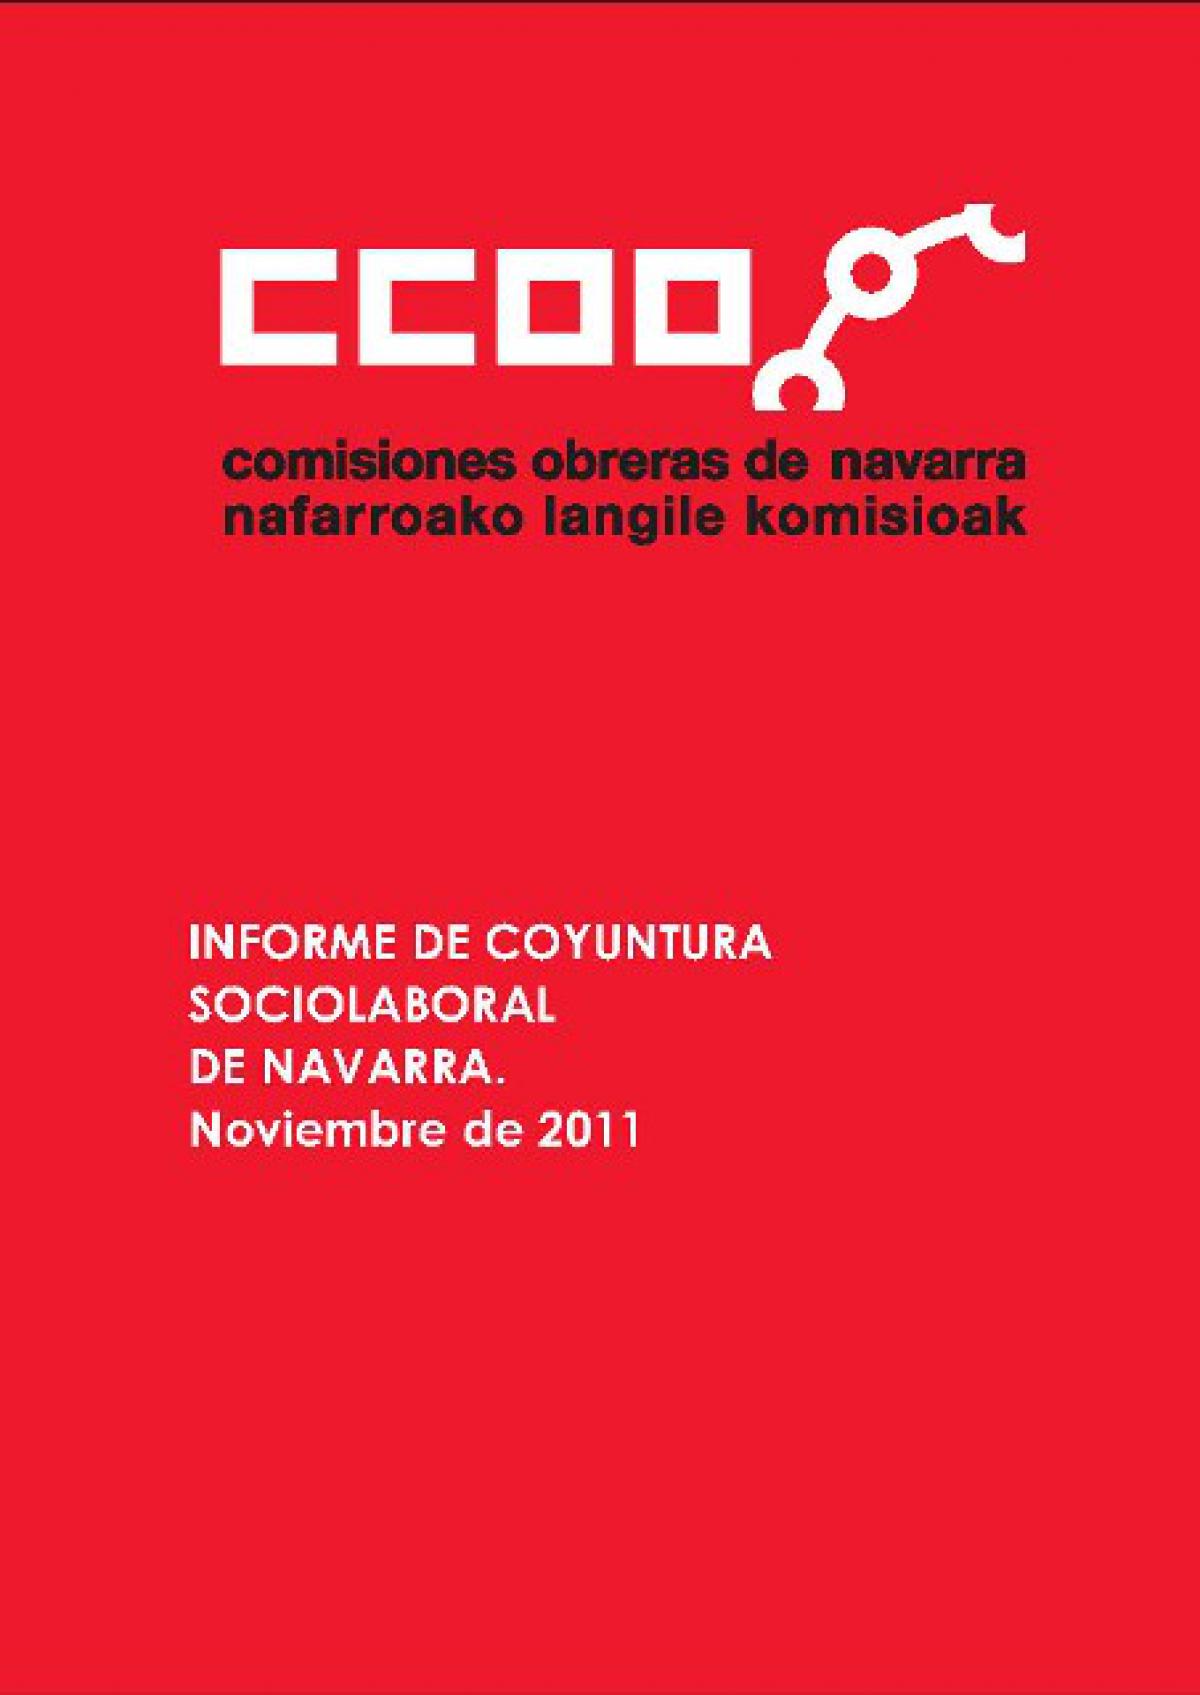 informe de coyuntura soiolaboral de navarra. noviembre 2011